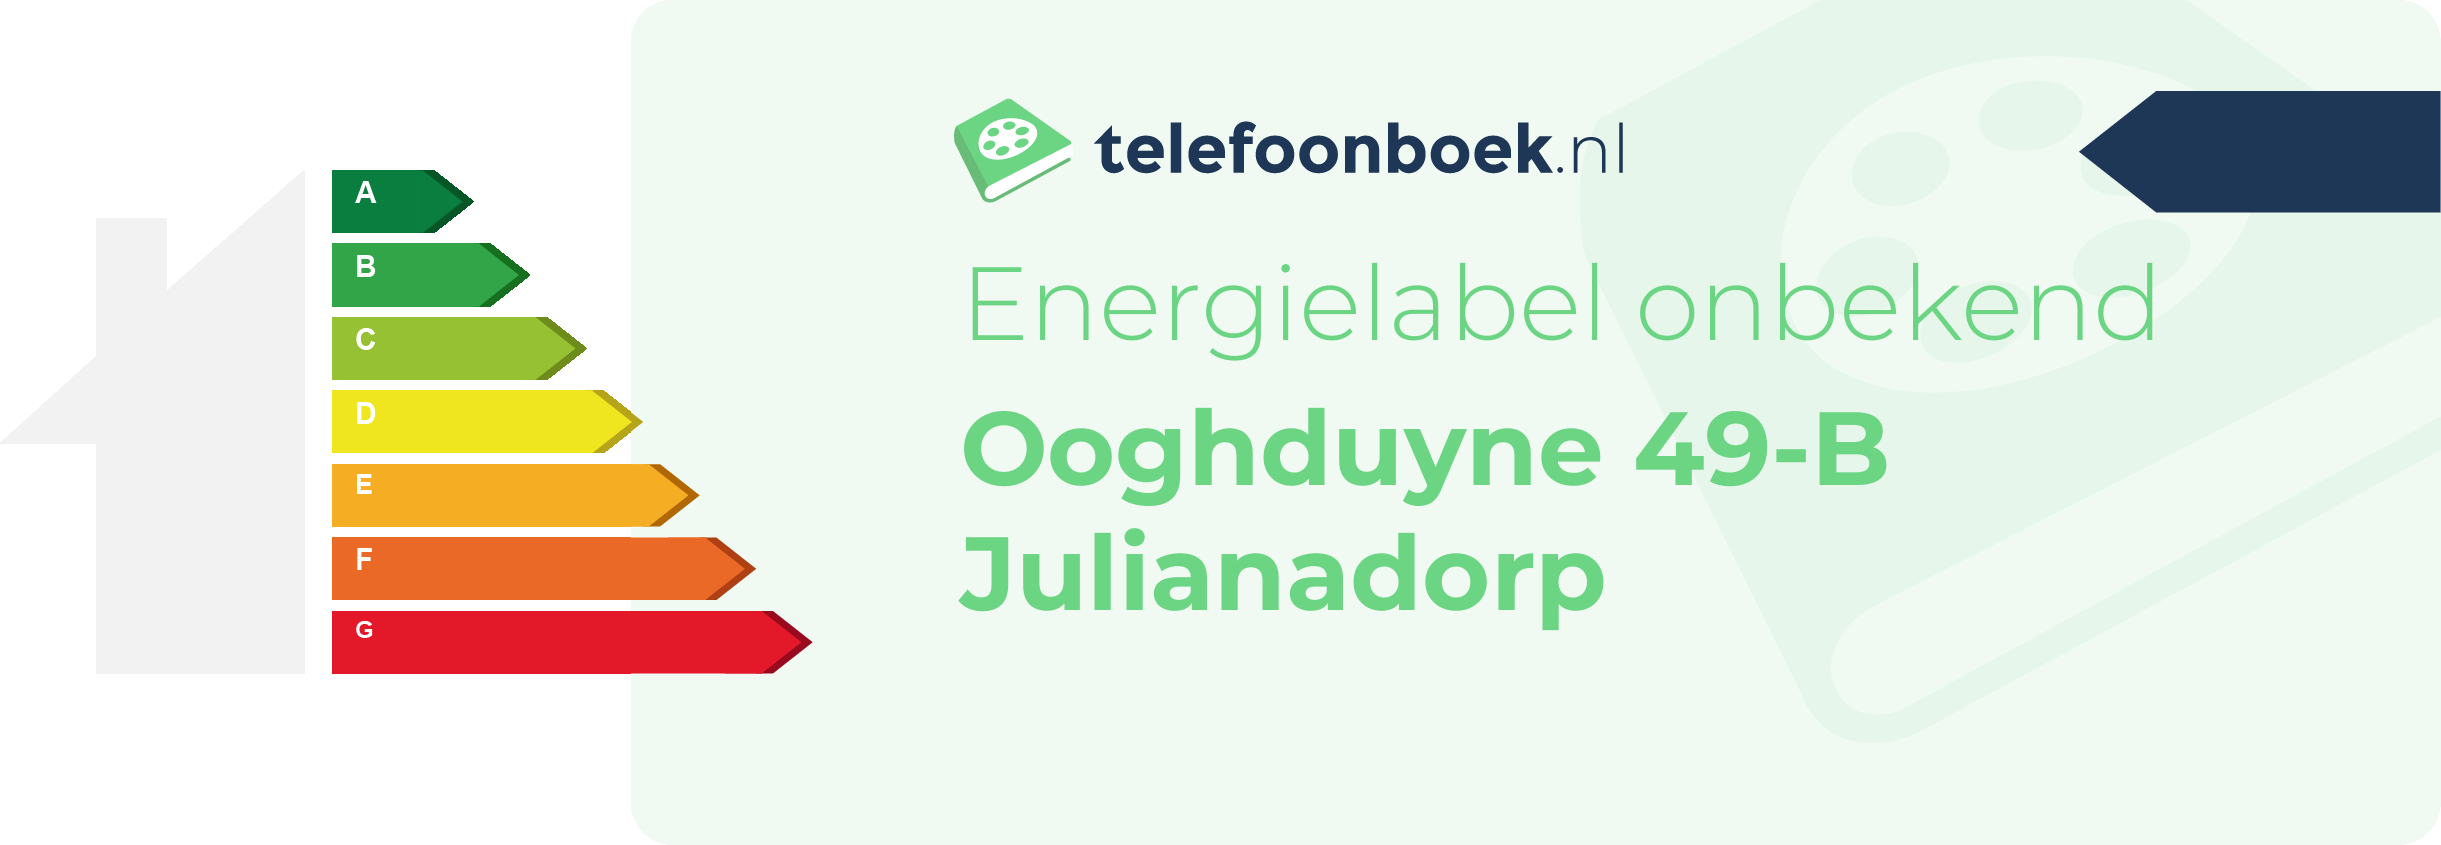 Energielabel Ooghduyne 49-B Julianadorp